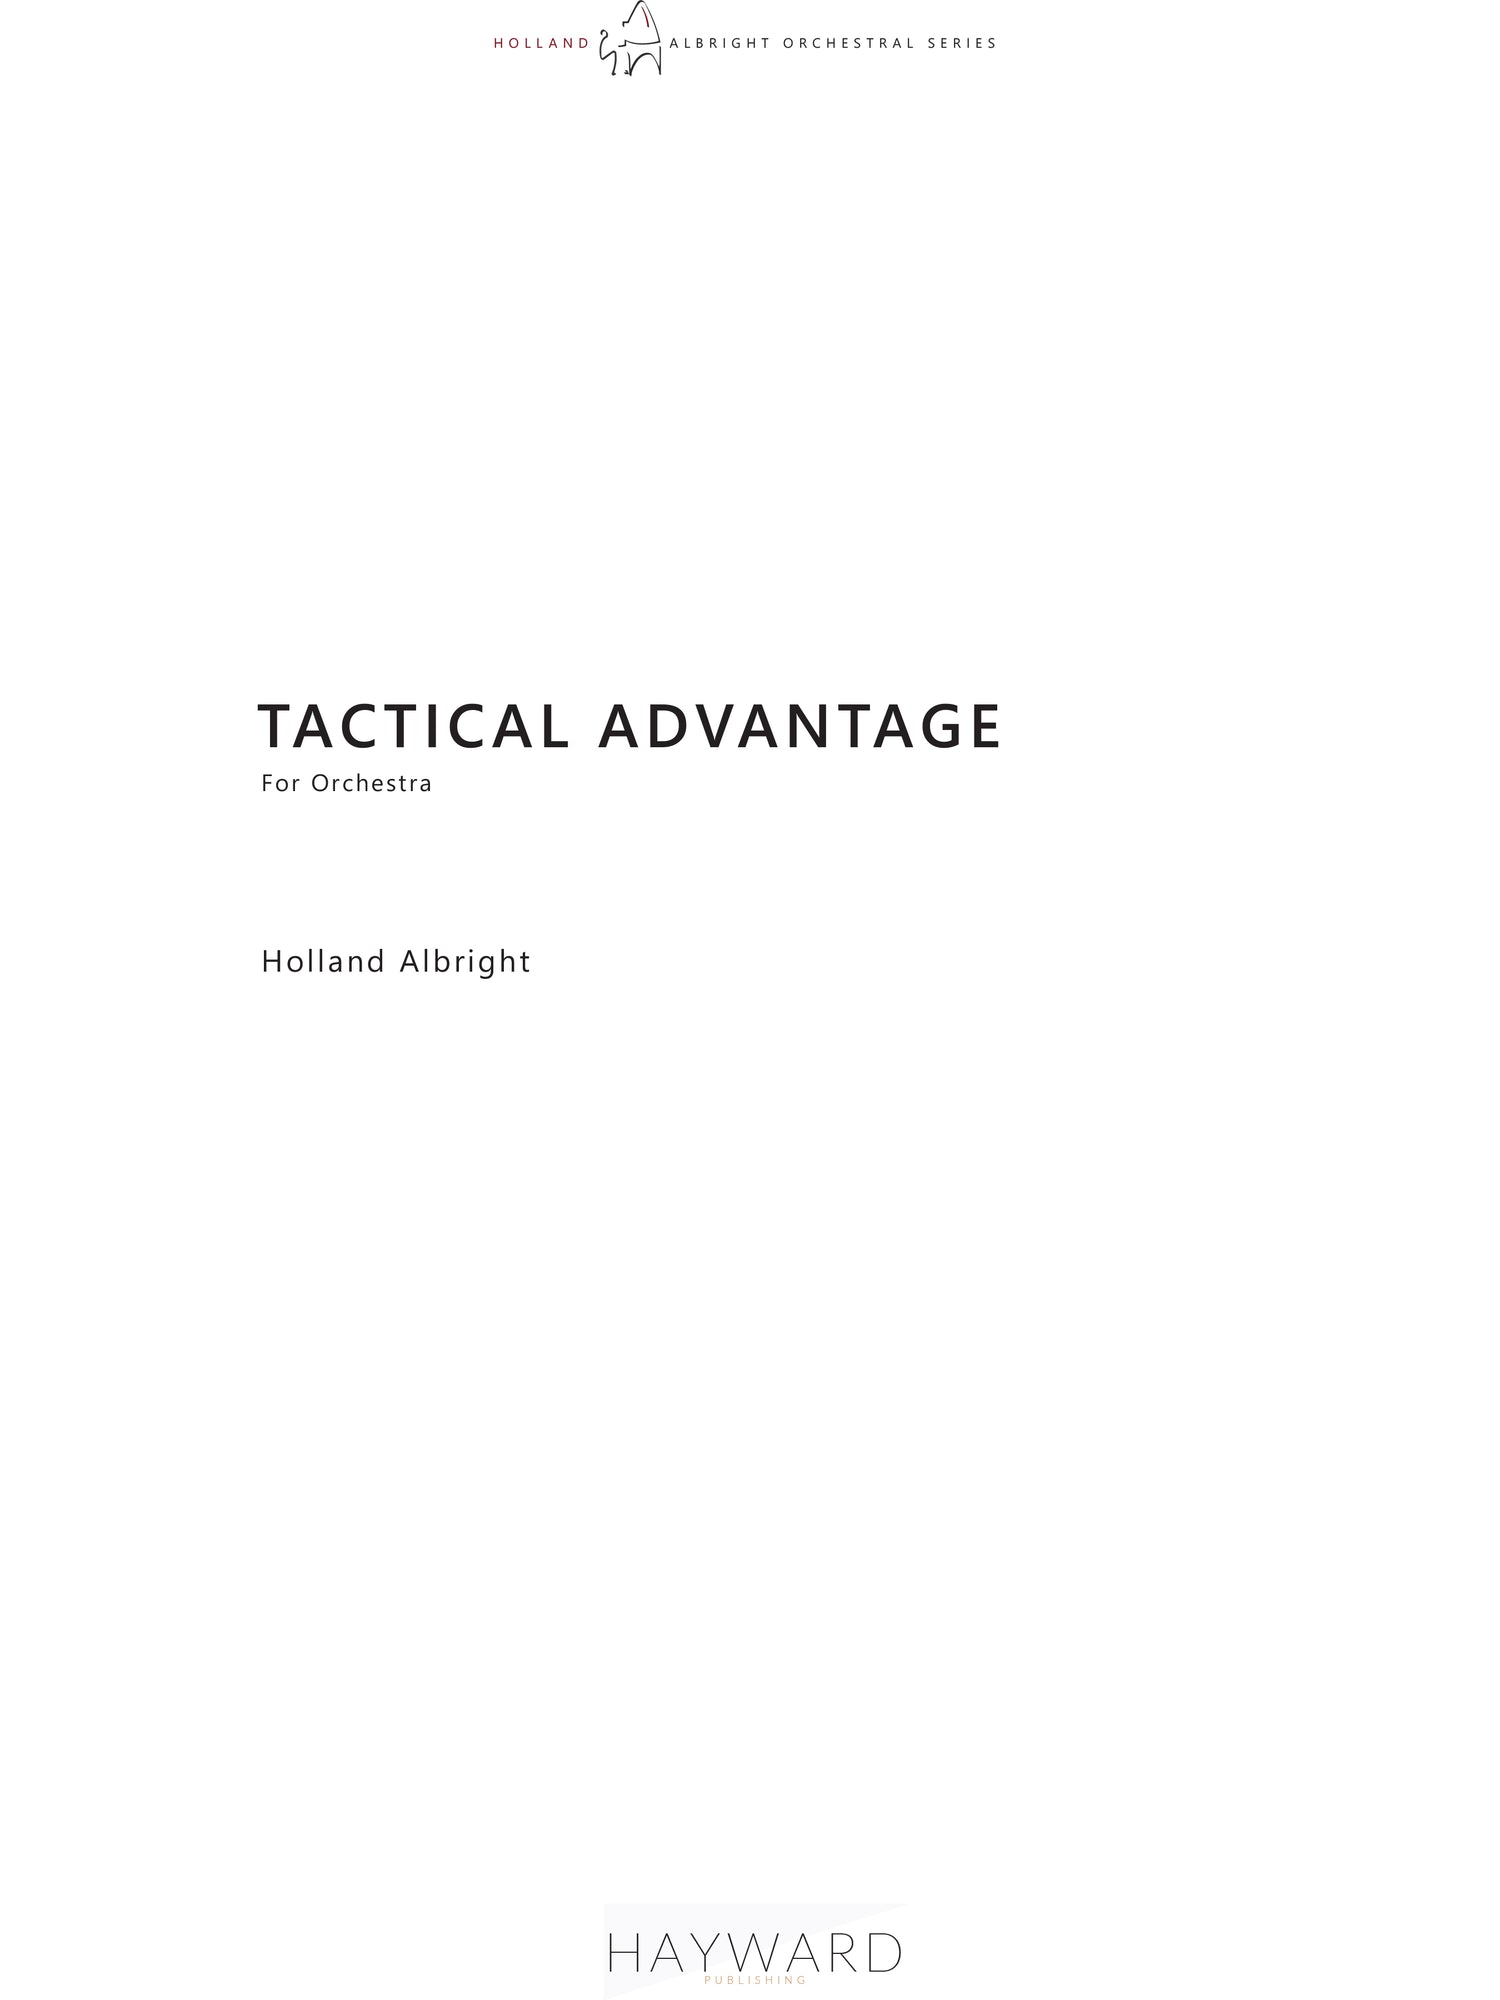 Tactical Advantage